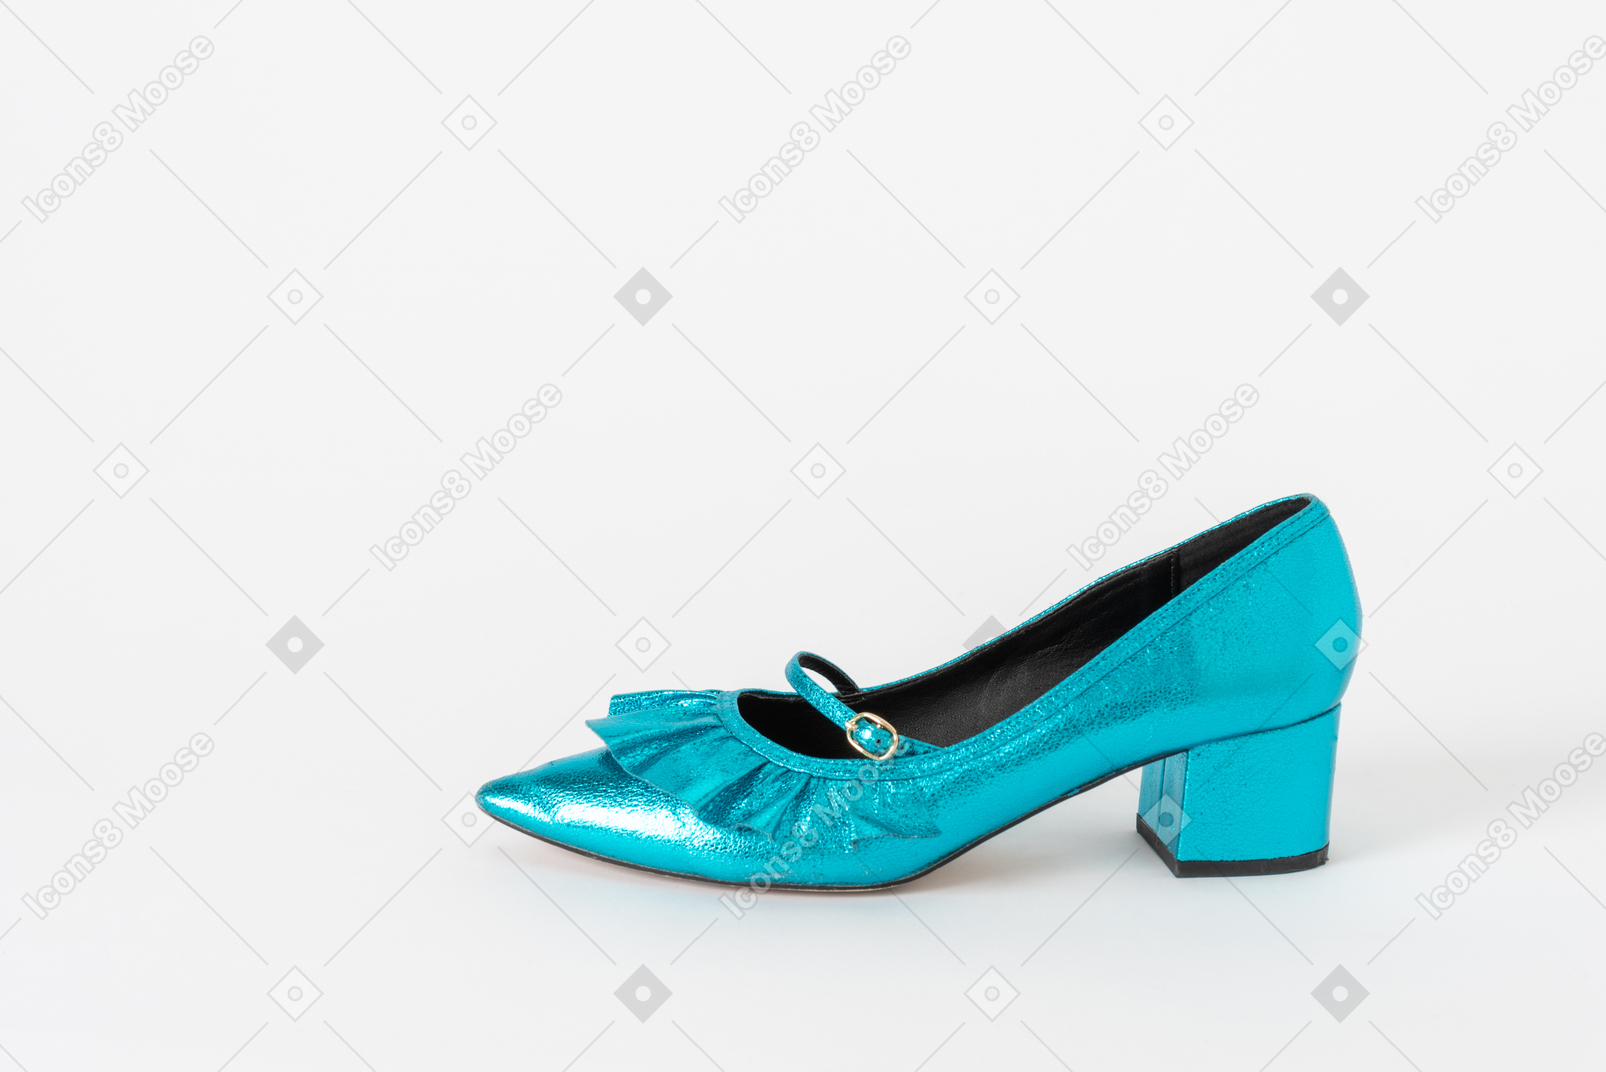 Une seule chaussure bleue